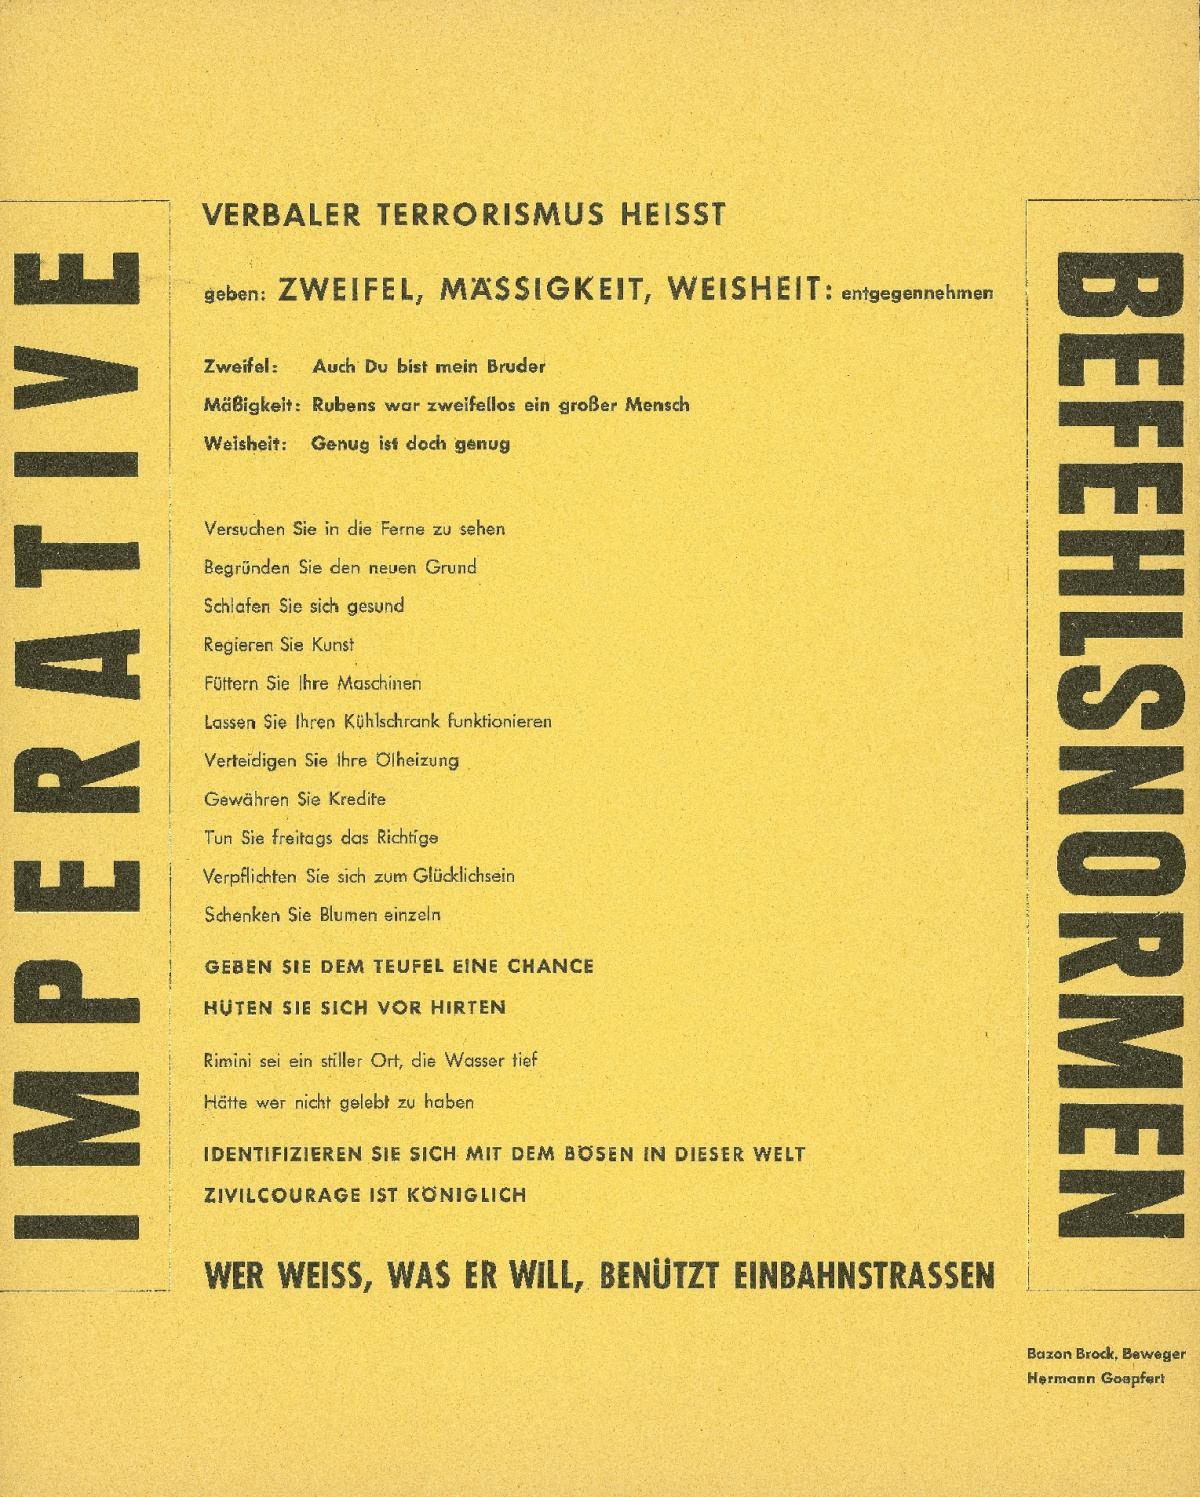 Imperative Befehlsnormen, Bild: Aktion "Donnerstagsmanifest" von Bazon Brock und Hermann Goepfert, Frankfurt am Main 1962..